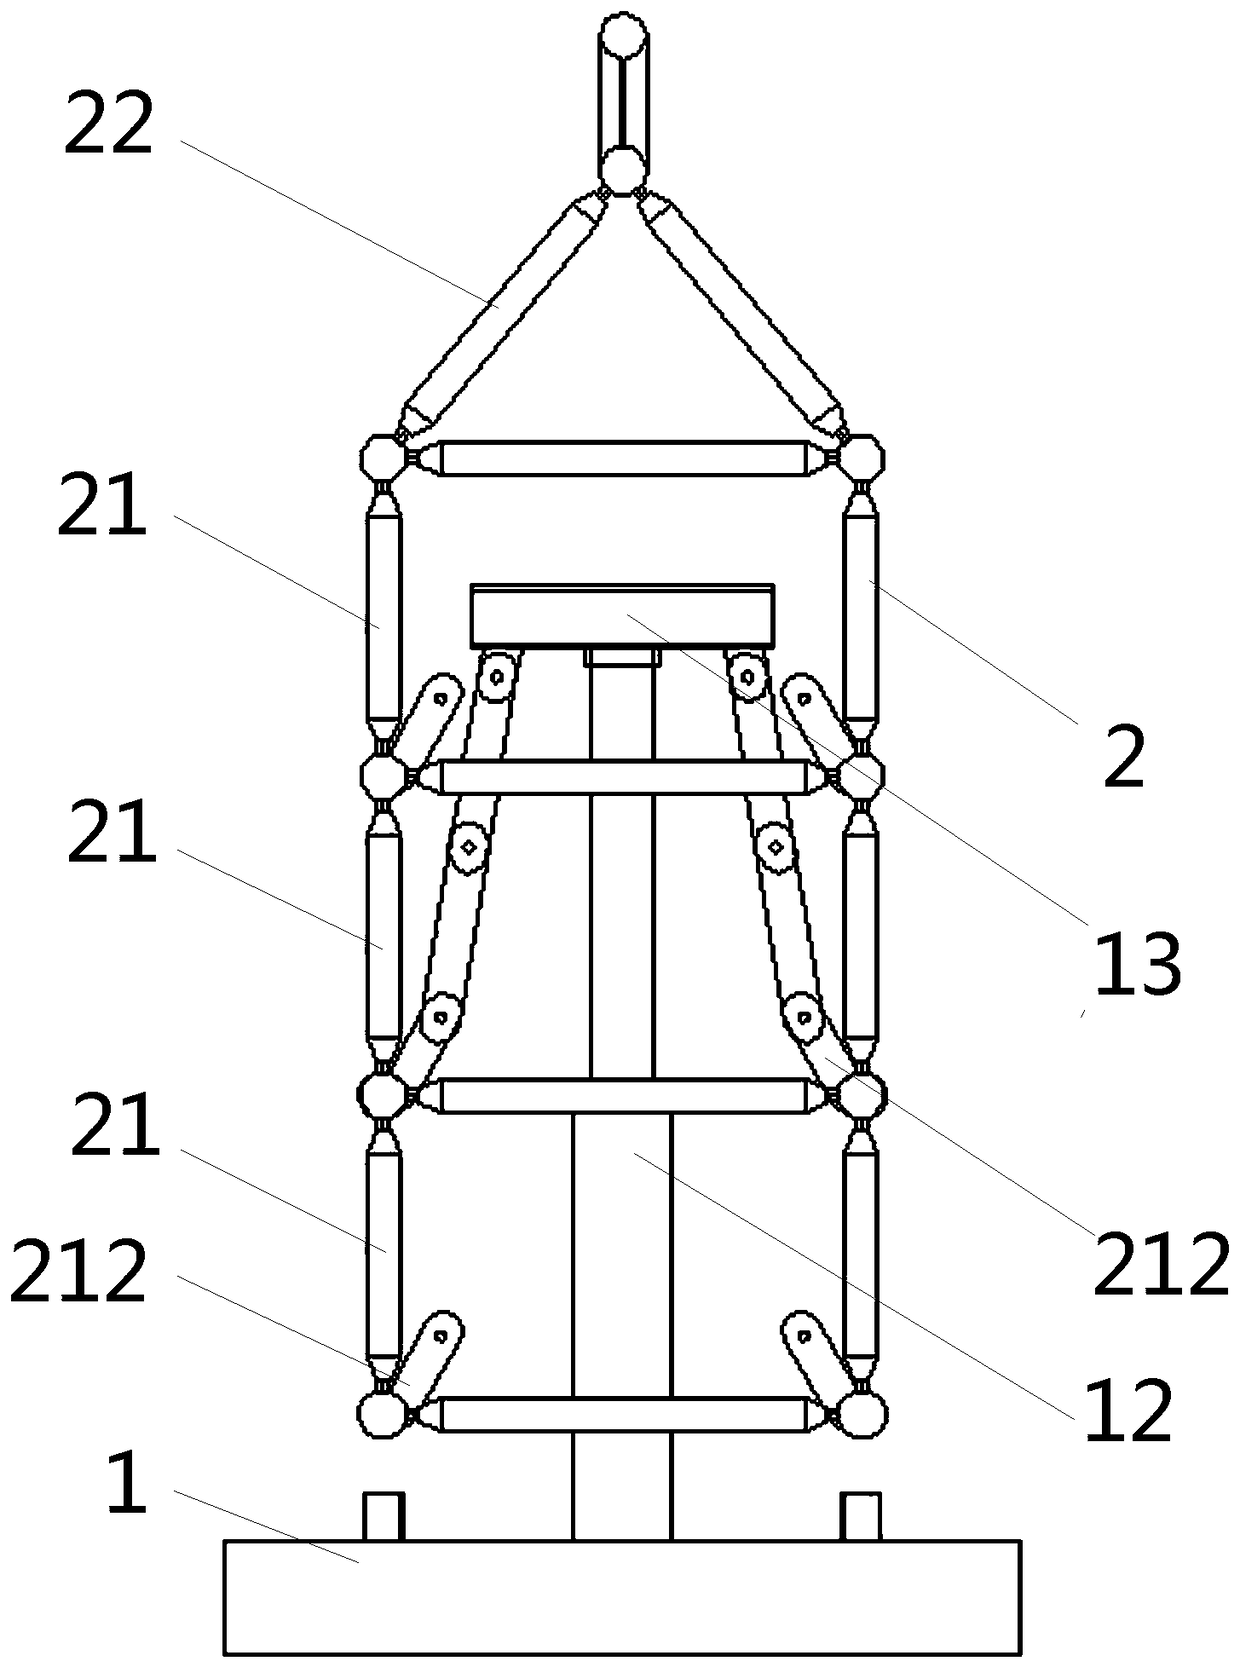 Steel truss jacking device